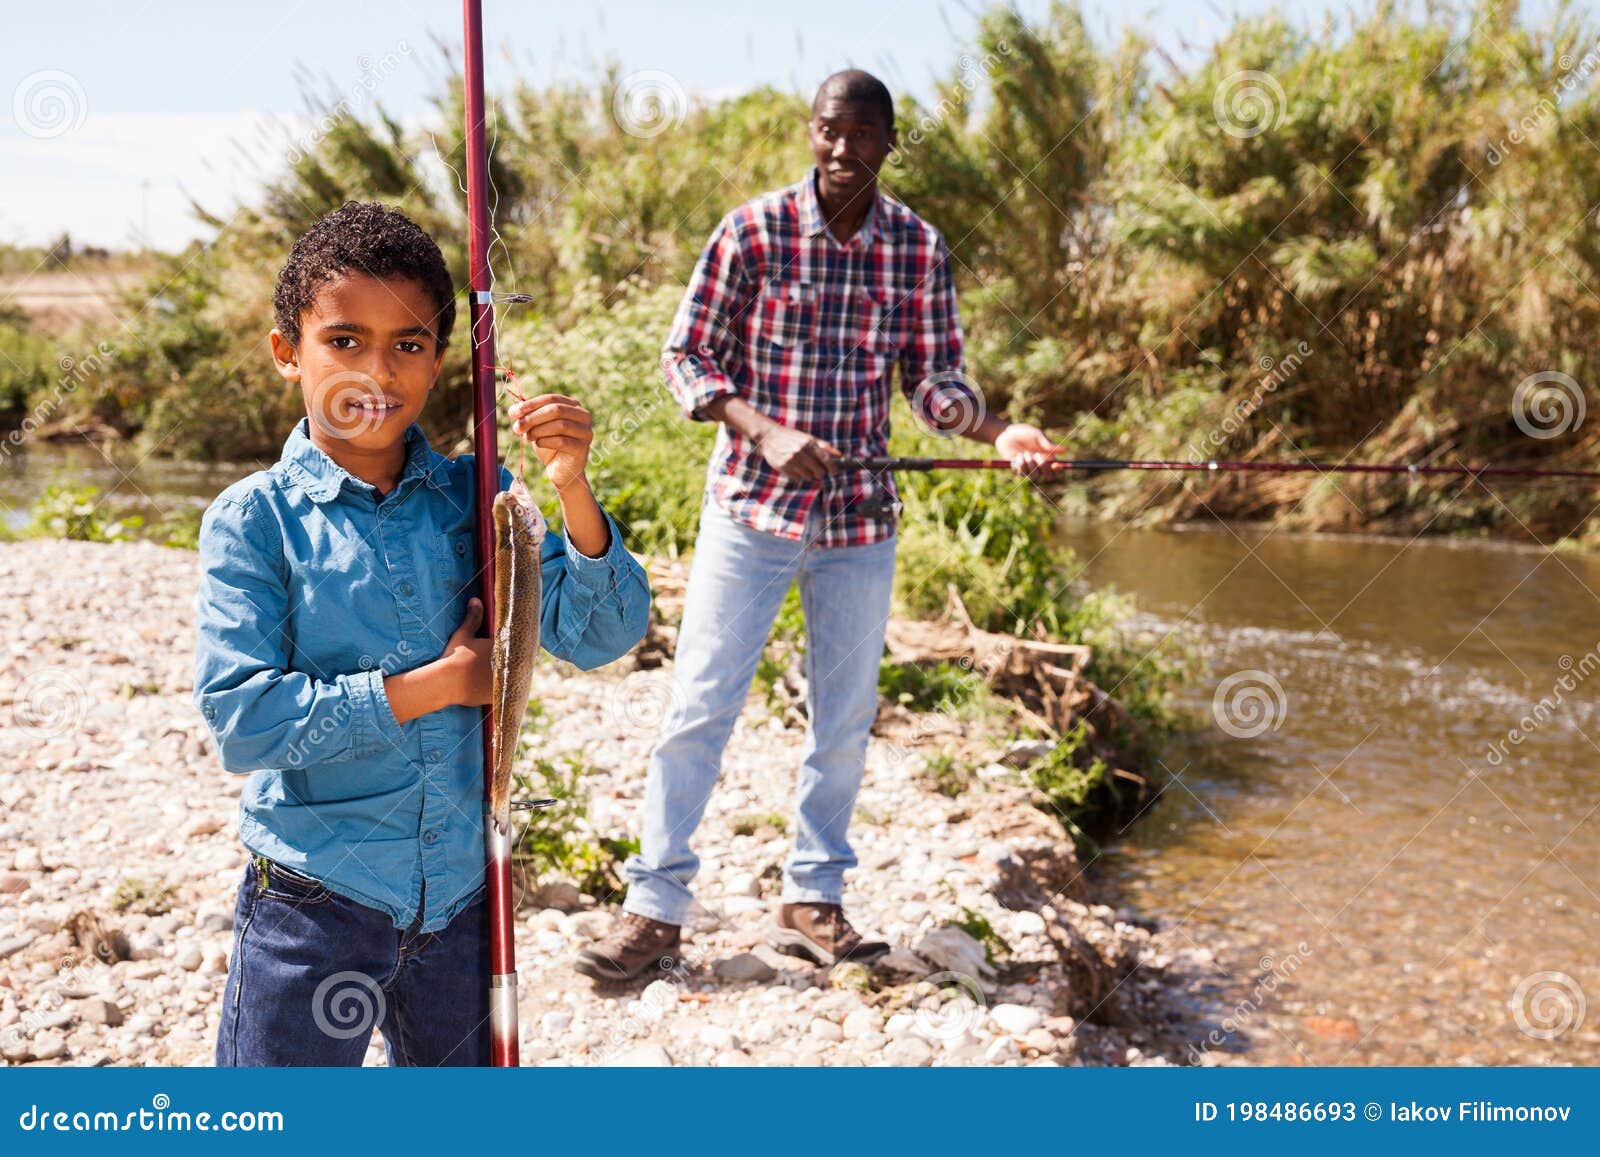 Man and Boy Holding Fish on Rod Stock Image - Image of leisure, coast:  198486693